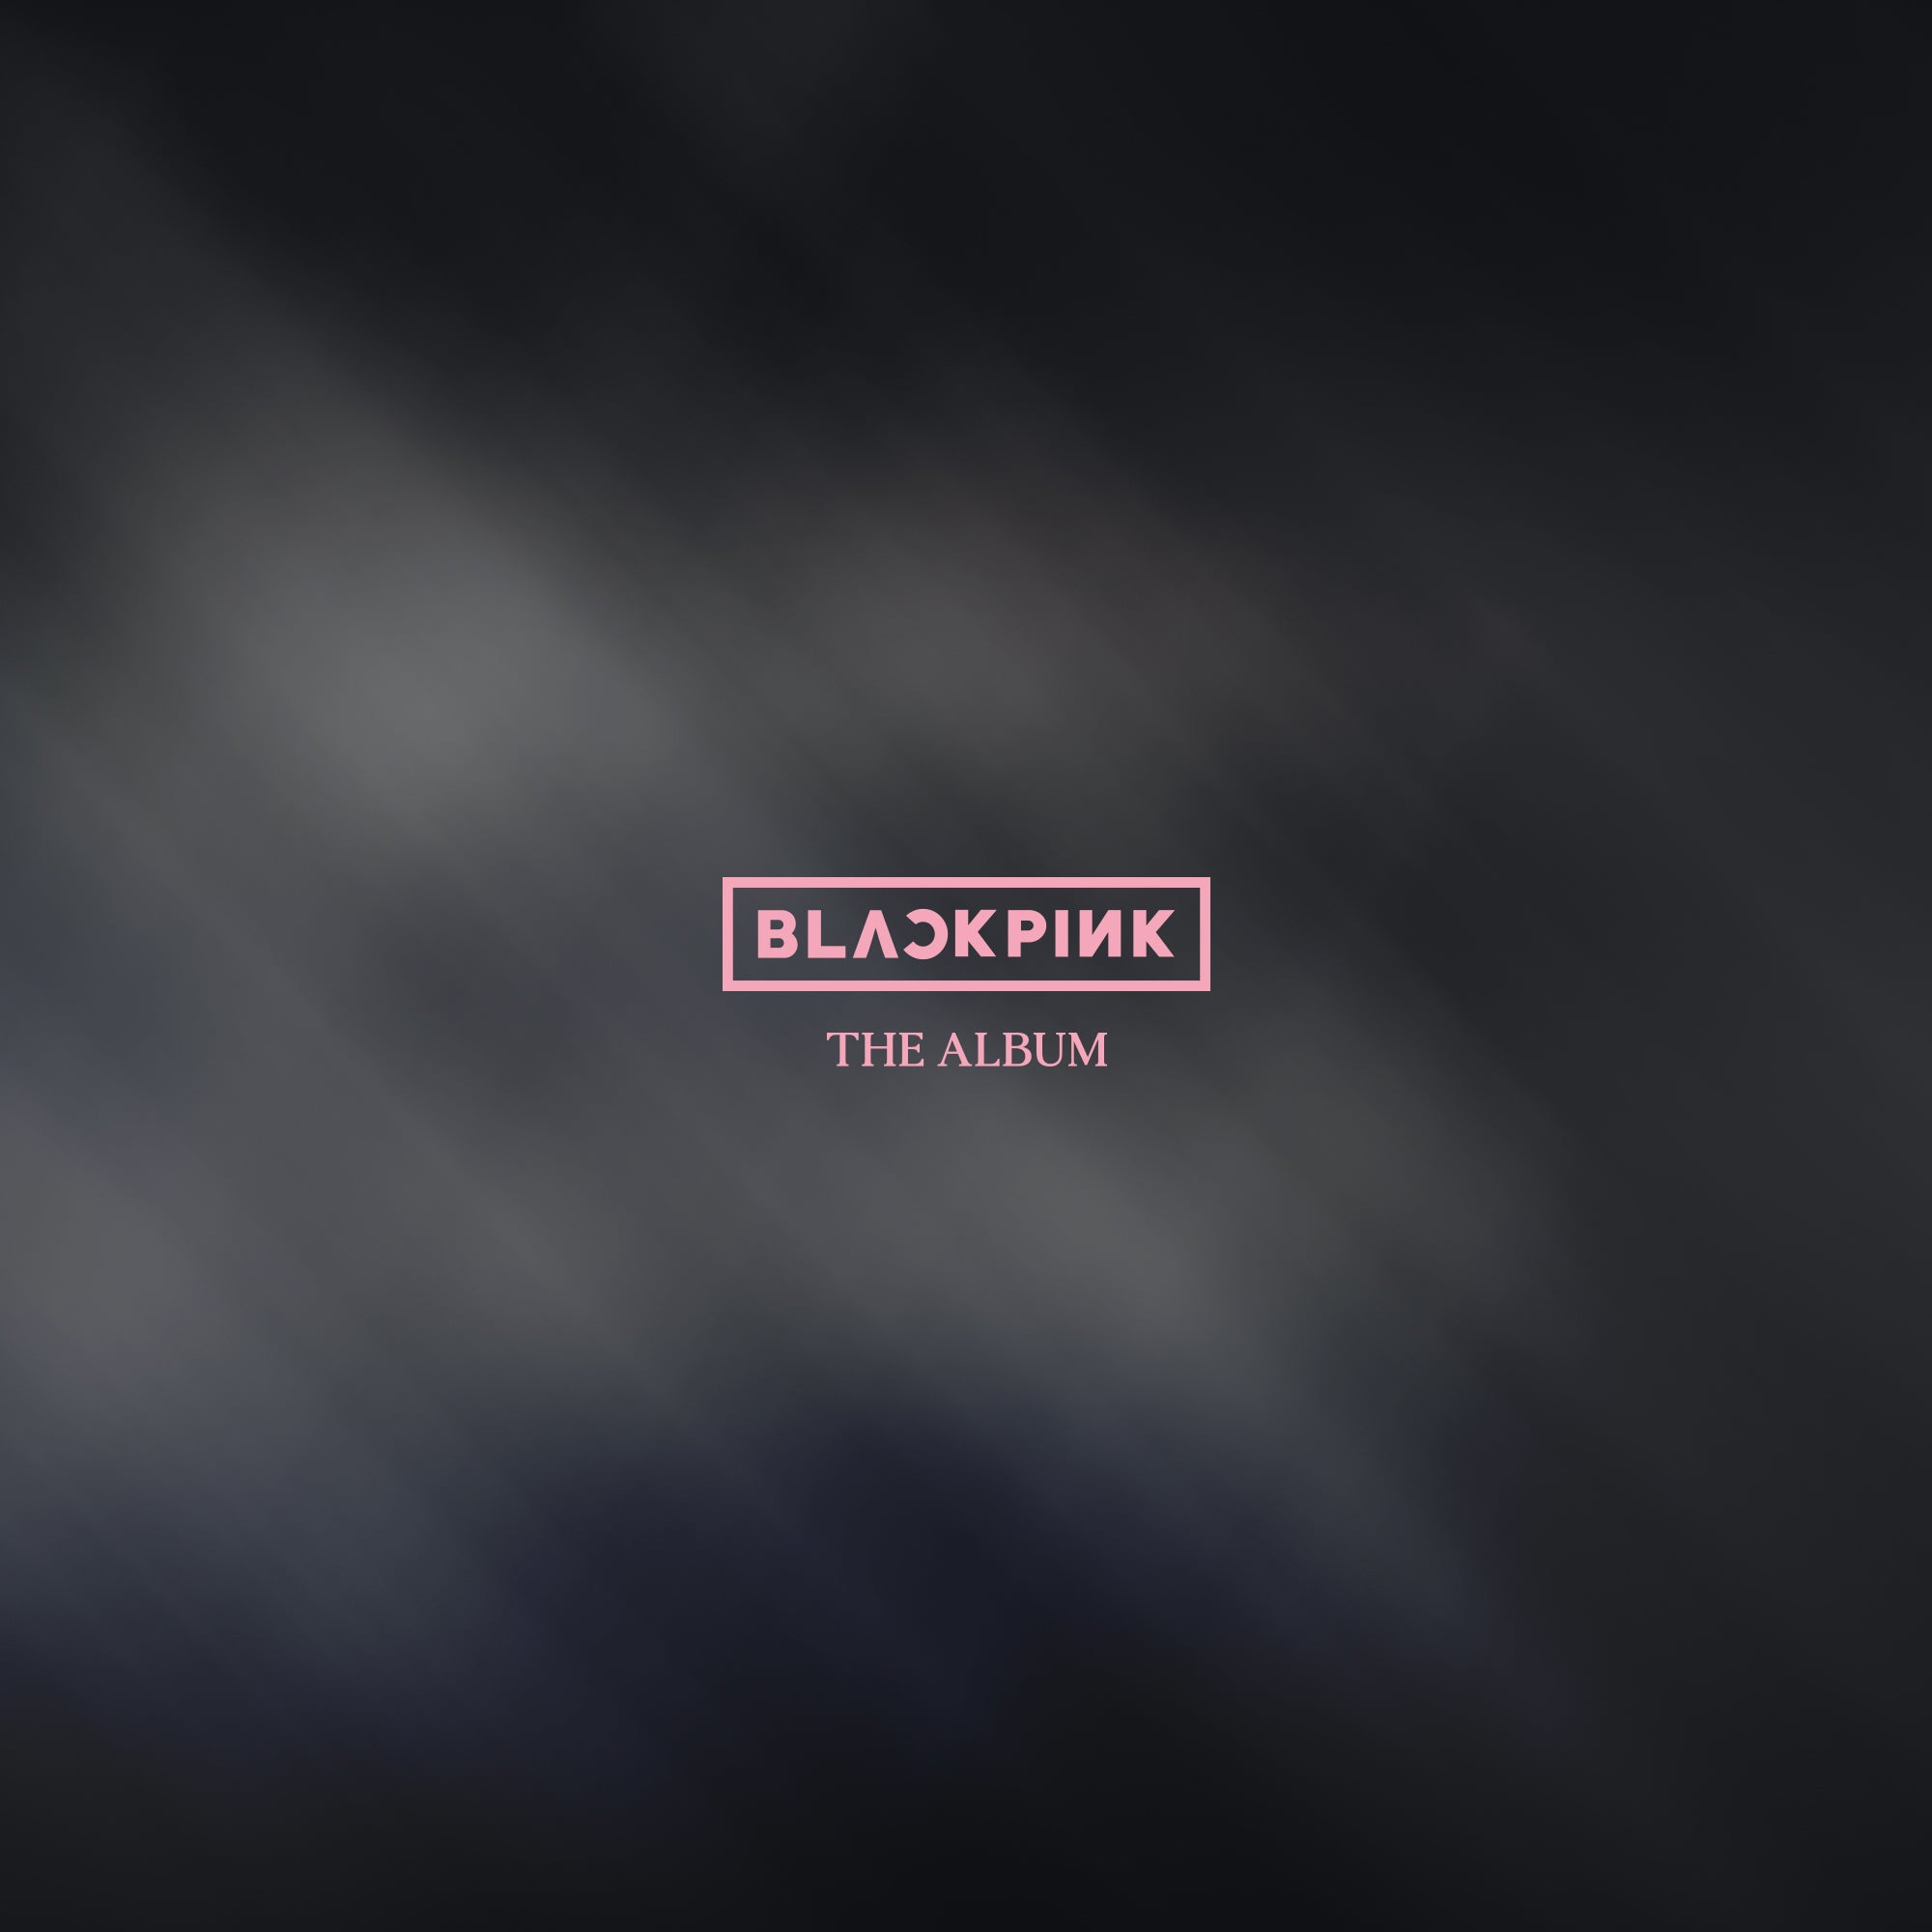 Kshopina - Blackpink - The Album - Saudi Arabia - Riyadh - Set 5